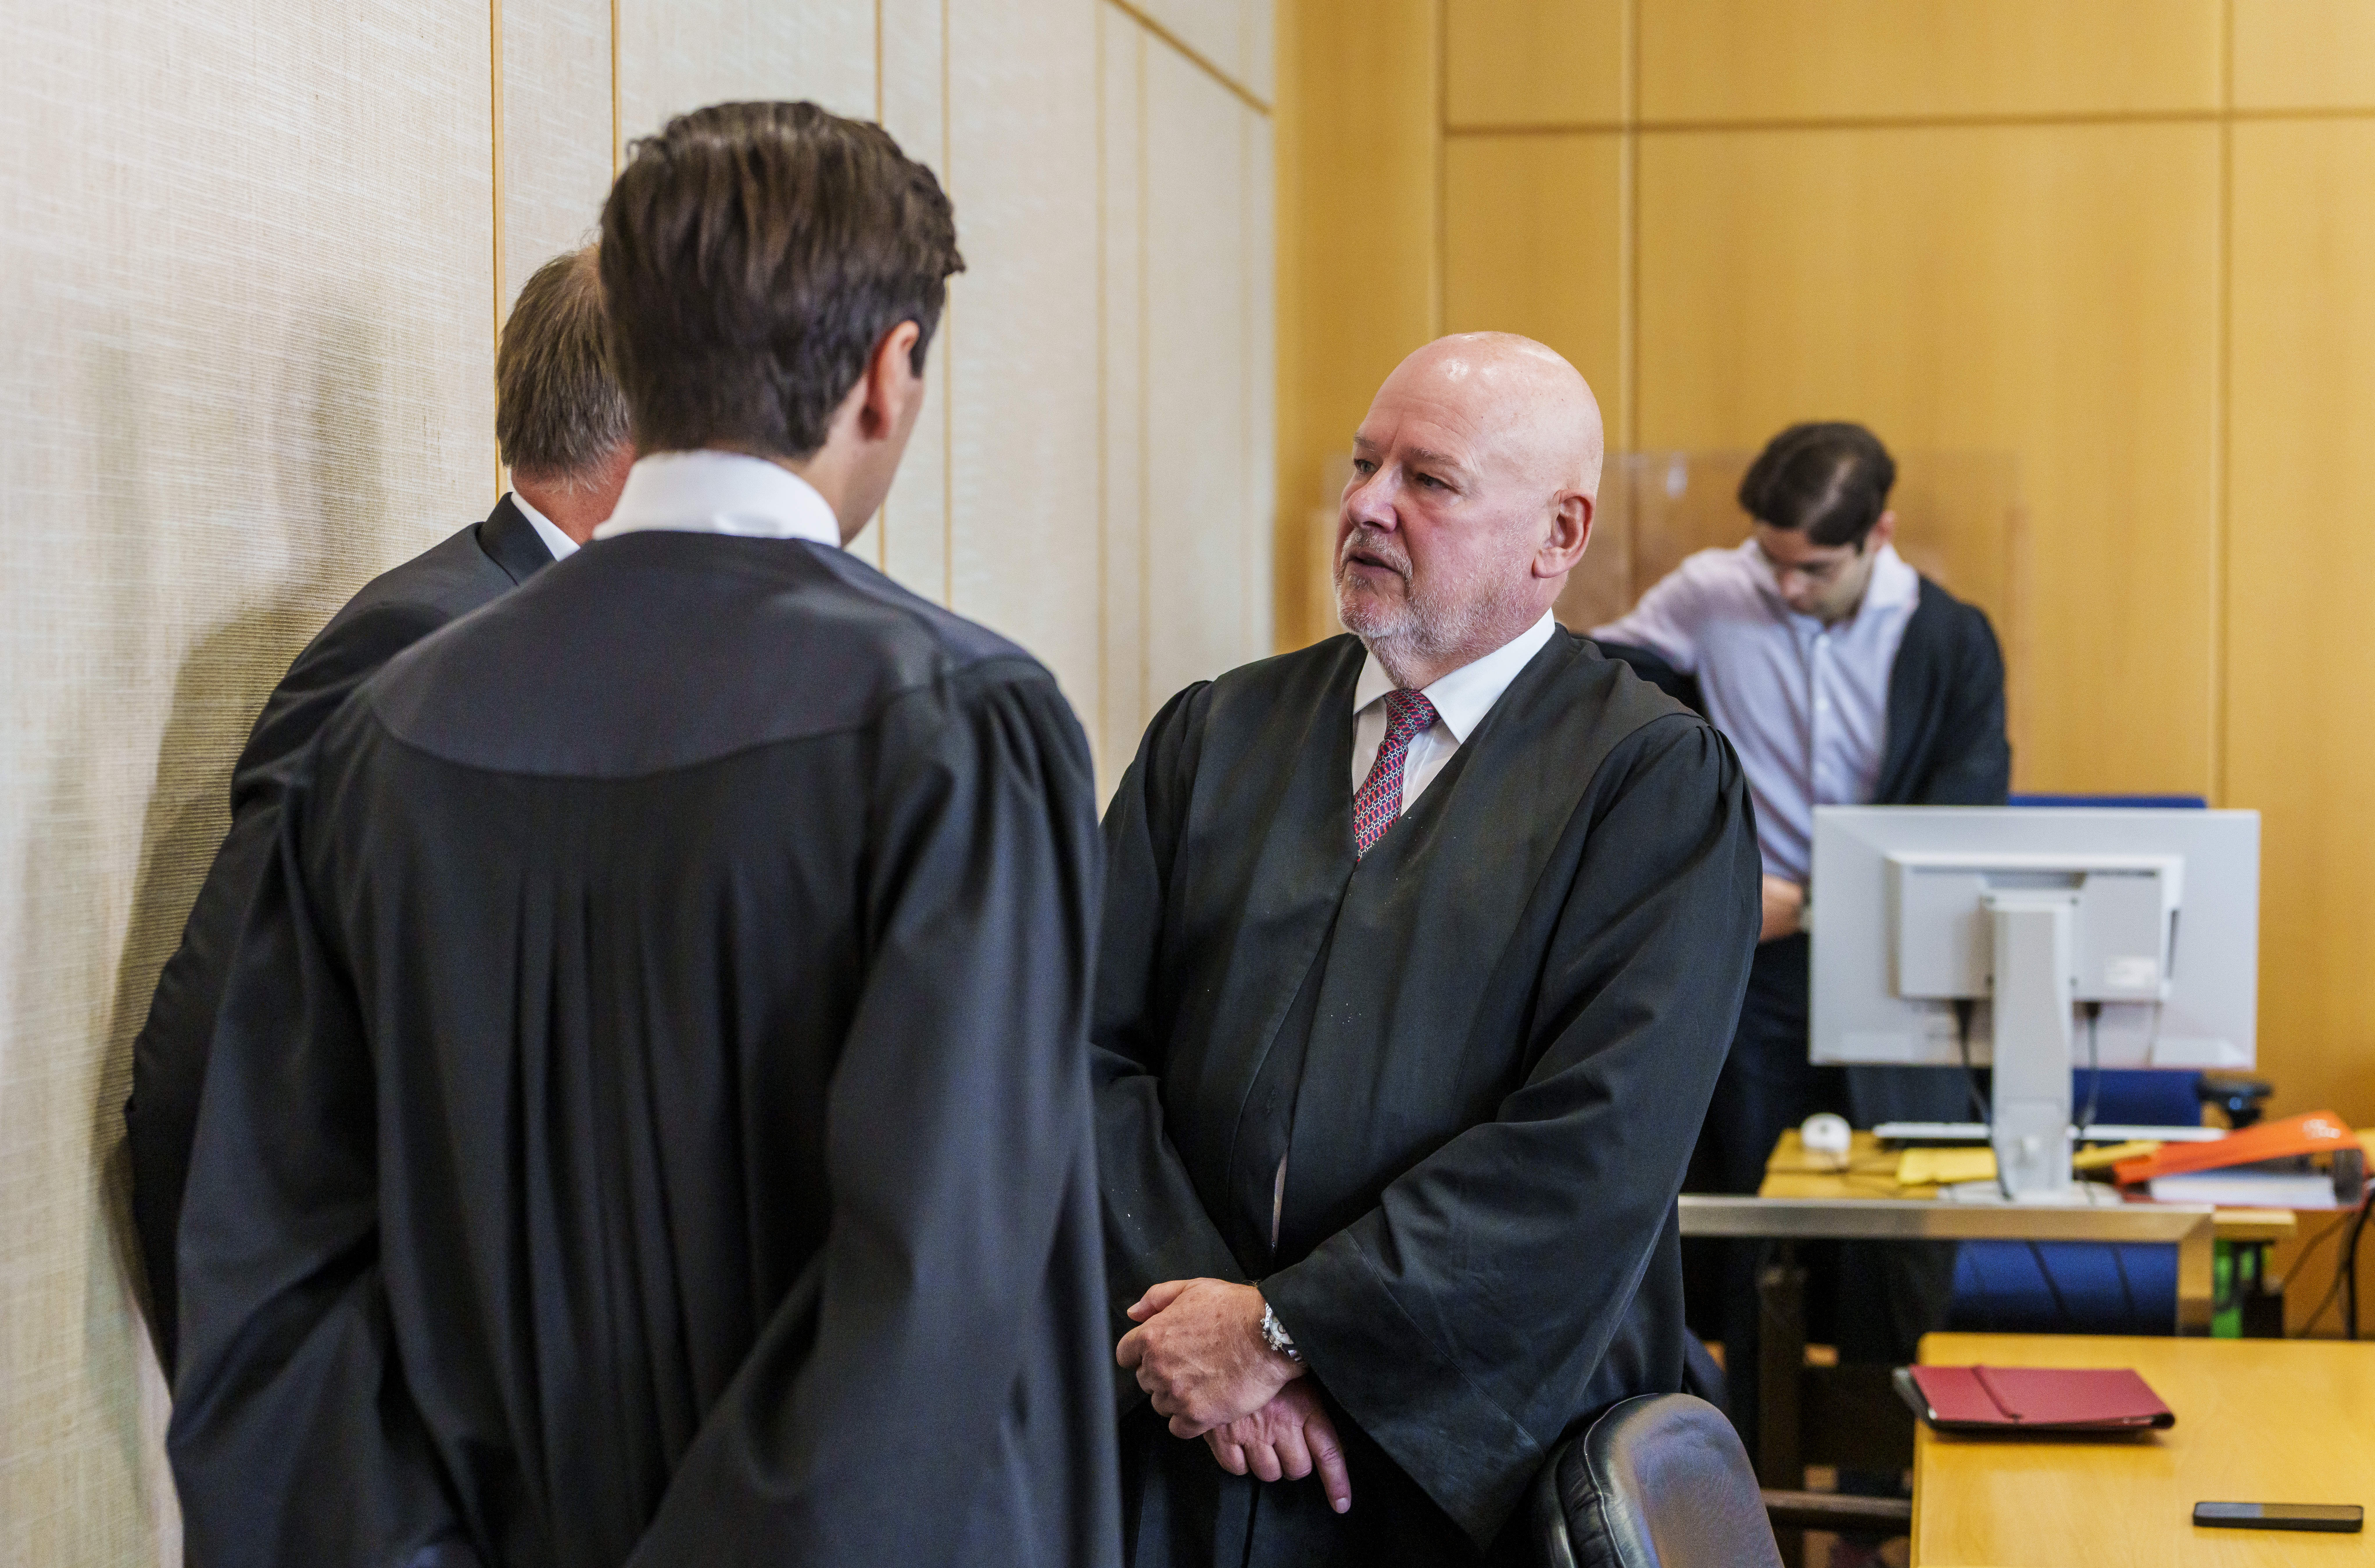 Der Angeklagte (l., verdeckt) steht vor beim Prozessauftakt mit seinem Anwälten im Gerichtssaal zusammen.